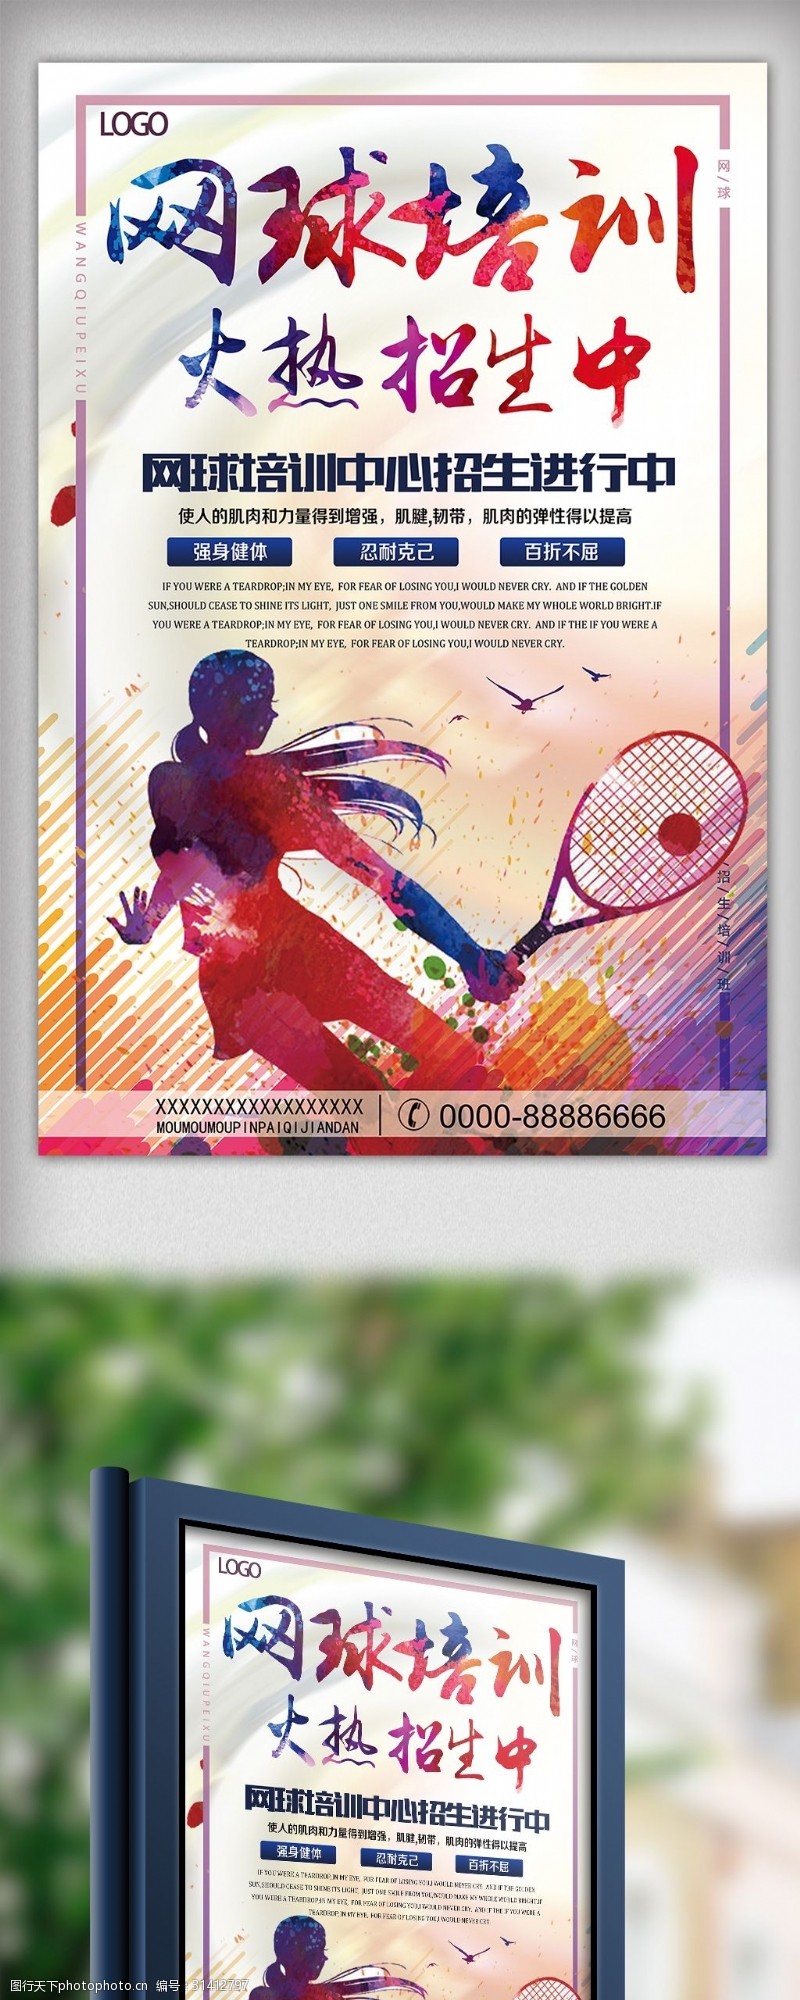 网球招生网球培训招生宣传海报模板下载